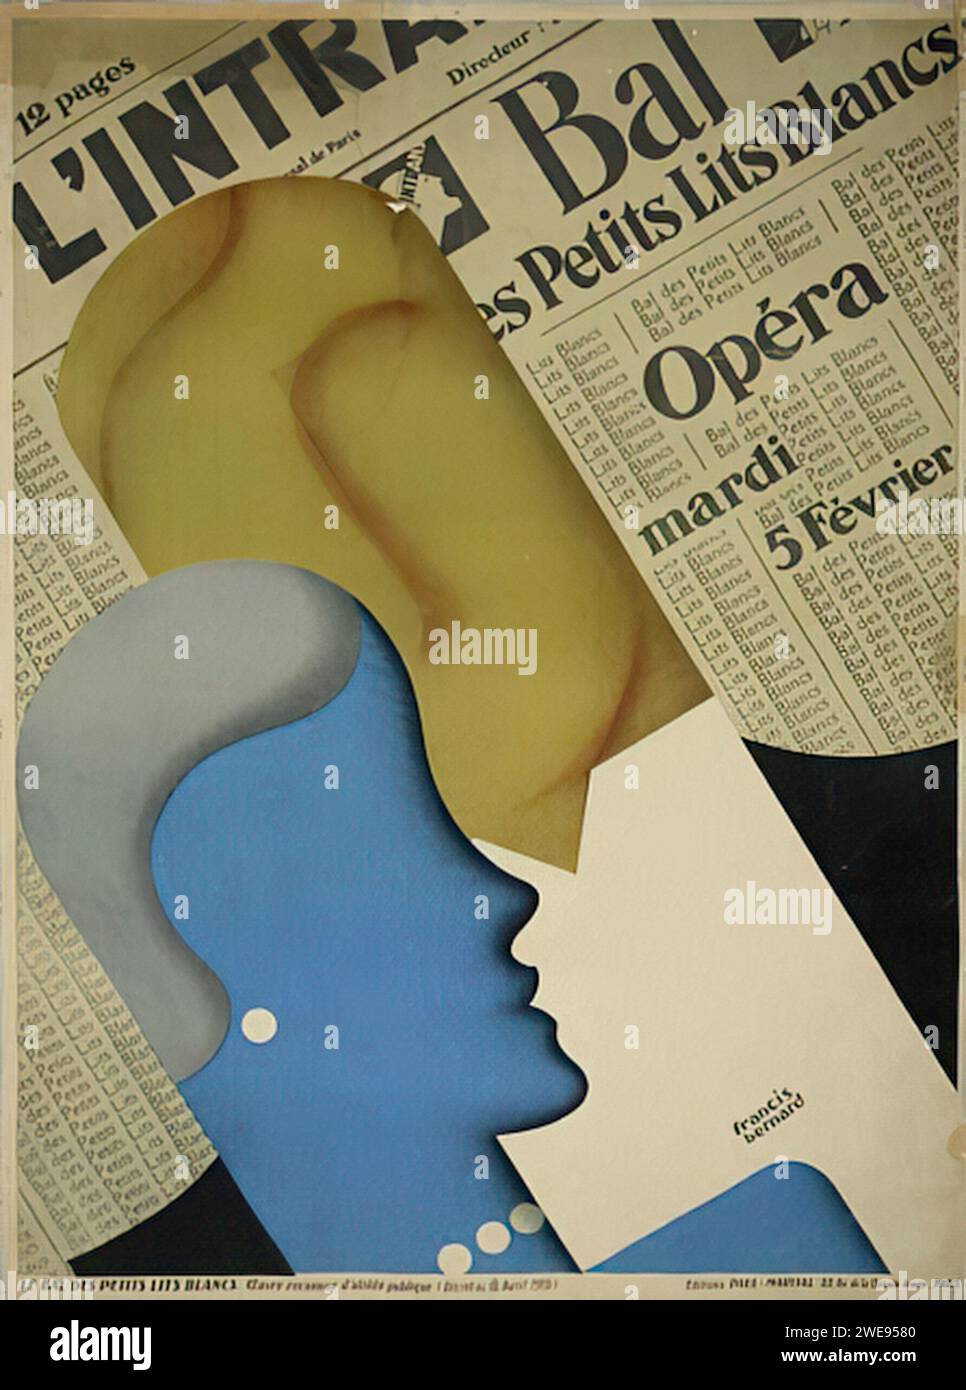 'L'INTRANSIGEANT' 'BAL DES PETITS LITS BLANCS' 'OPERA' 'MARDI 5 FEVRIER' ['DER UNNACHGIEBIGE' 'BALL DER KLEINEN WEISSEN BETTEN' 'OPERA' 'DIENSTAG, 5. FEBRUAR'] Ein französisches Vintage-Werbeplakat mit dem Profil zweier Gesichter in blau und gelb, überlagert auf einem Hintergrund von Zeitungstext. Das Design ist modernistisch mit surrealer Qualität und verwendet flache Farben und abstrakte Formen, um ein eindrucksvolles Bild zu schaffen. Stockfoto